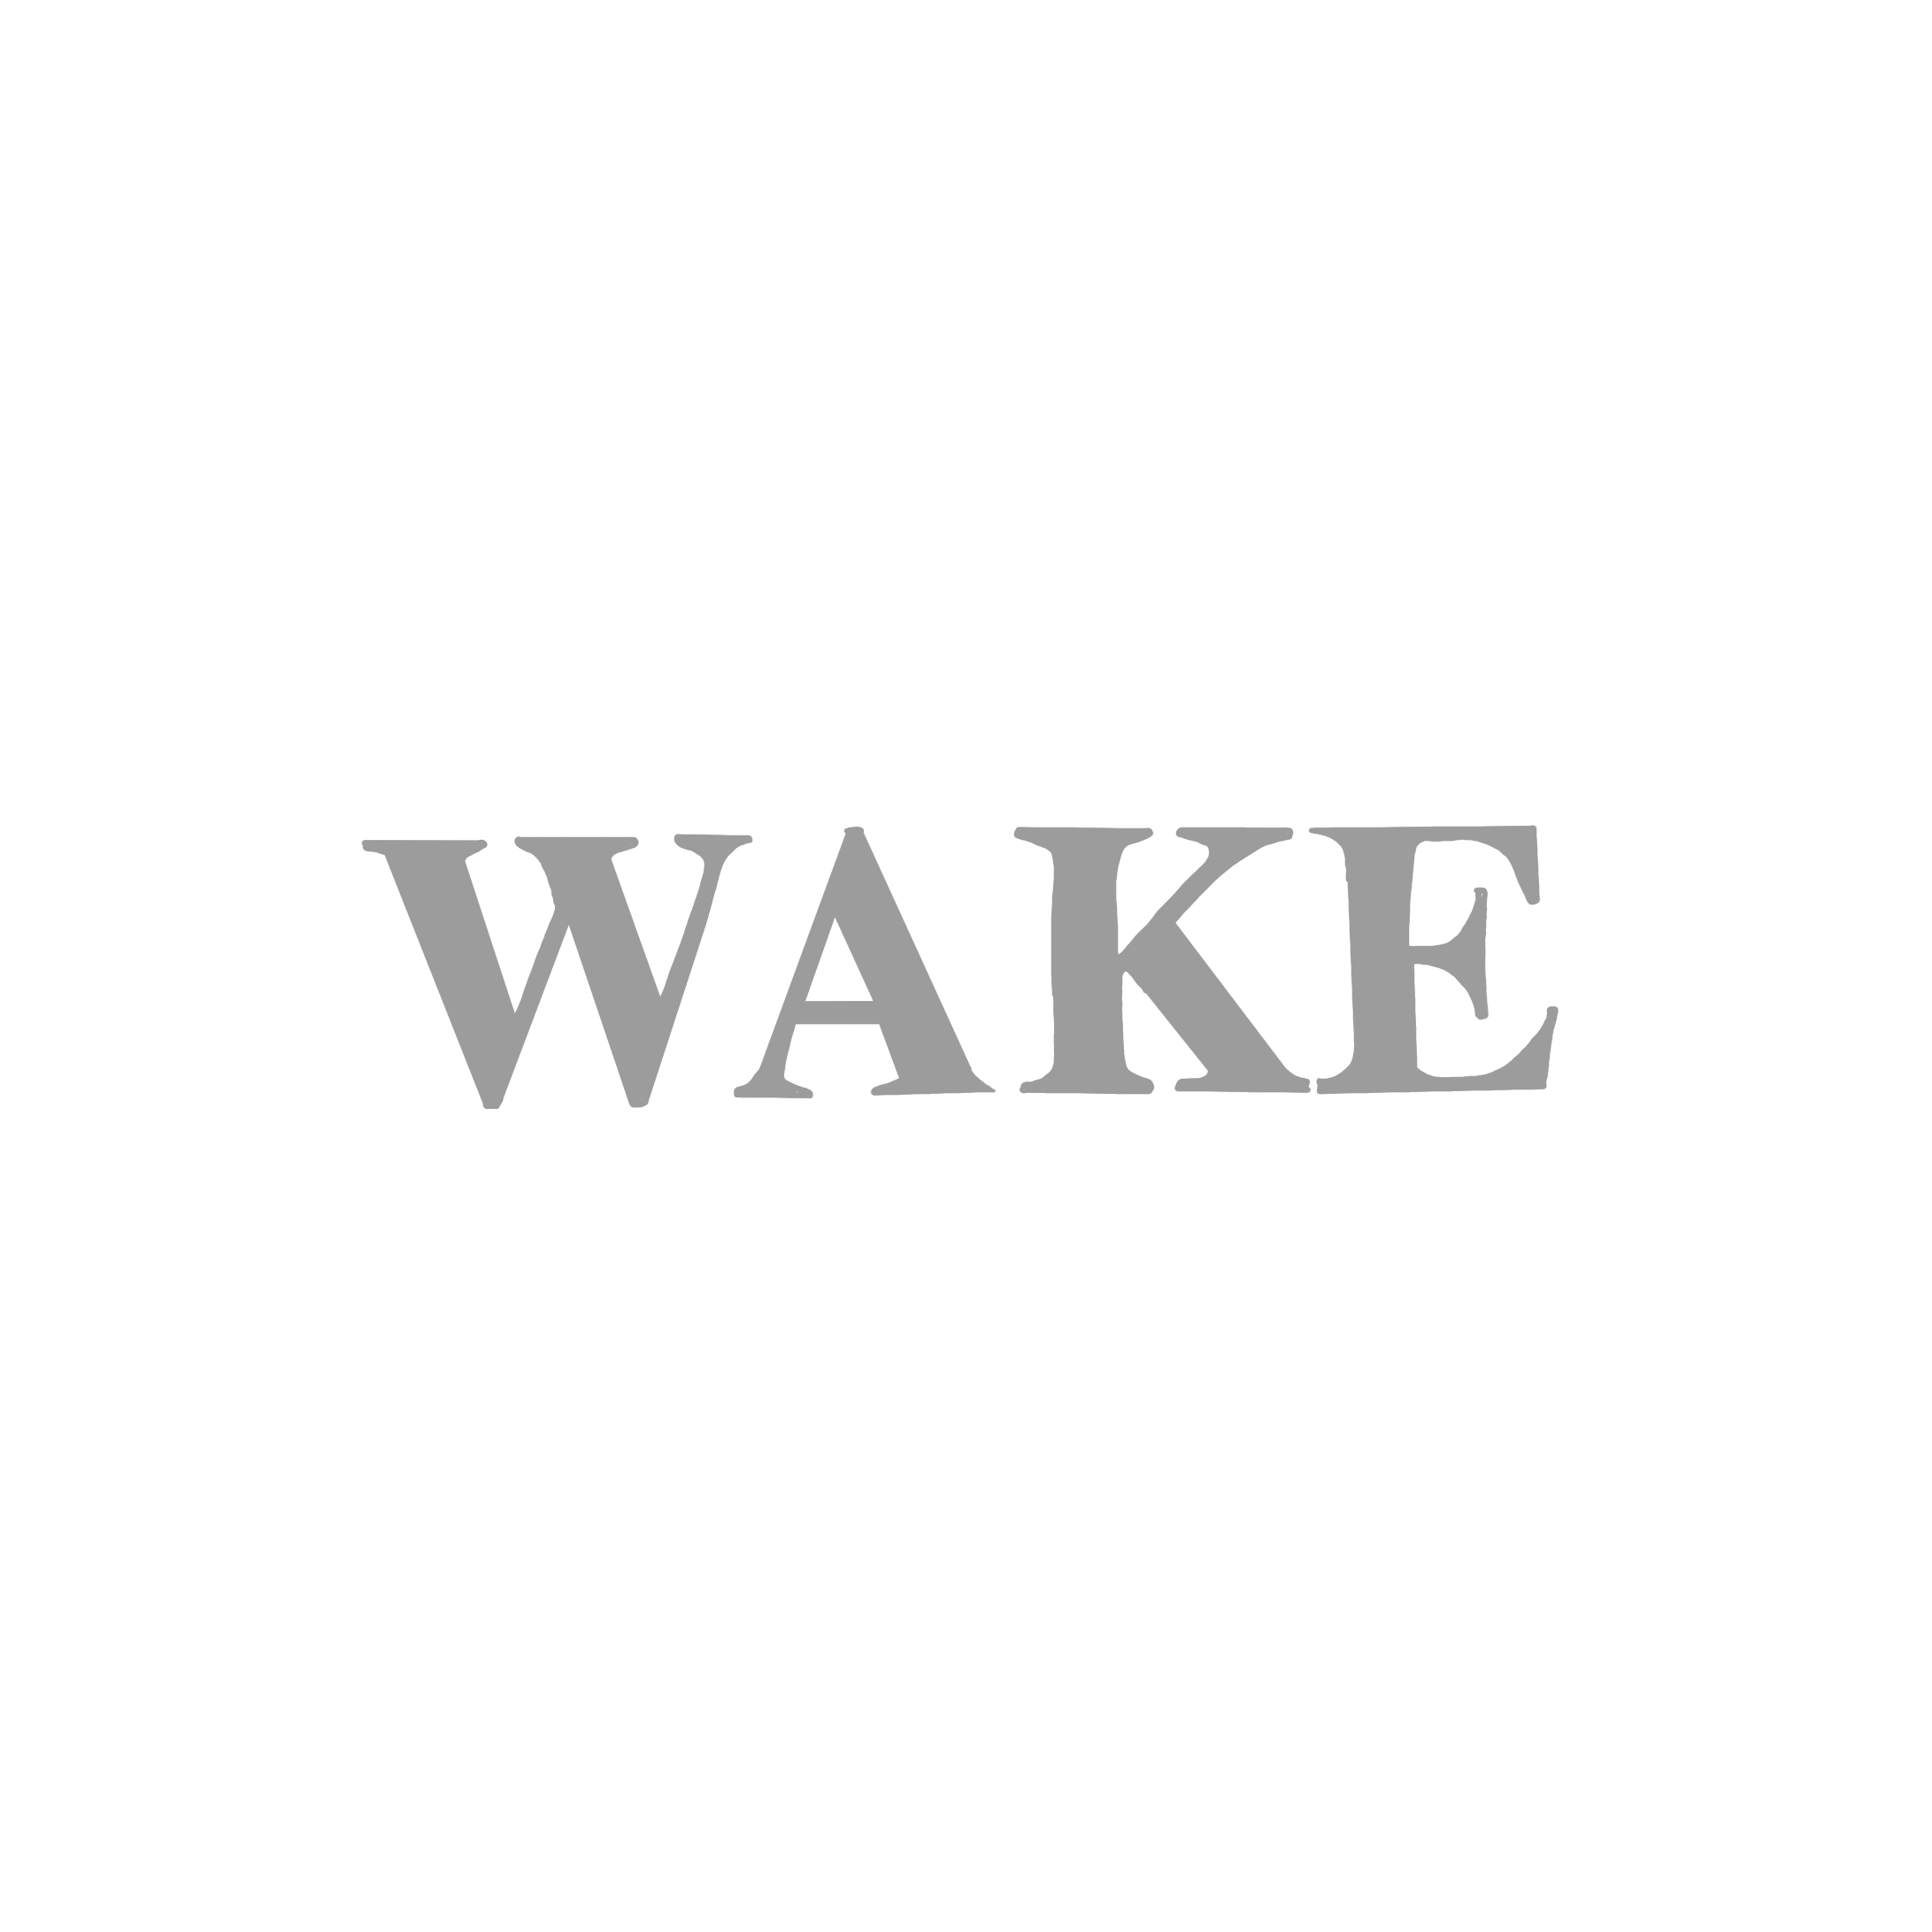 WAKE_wake